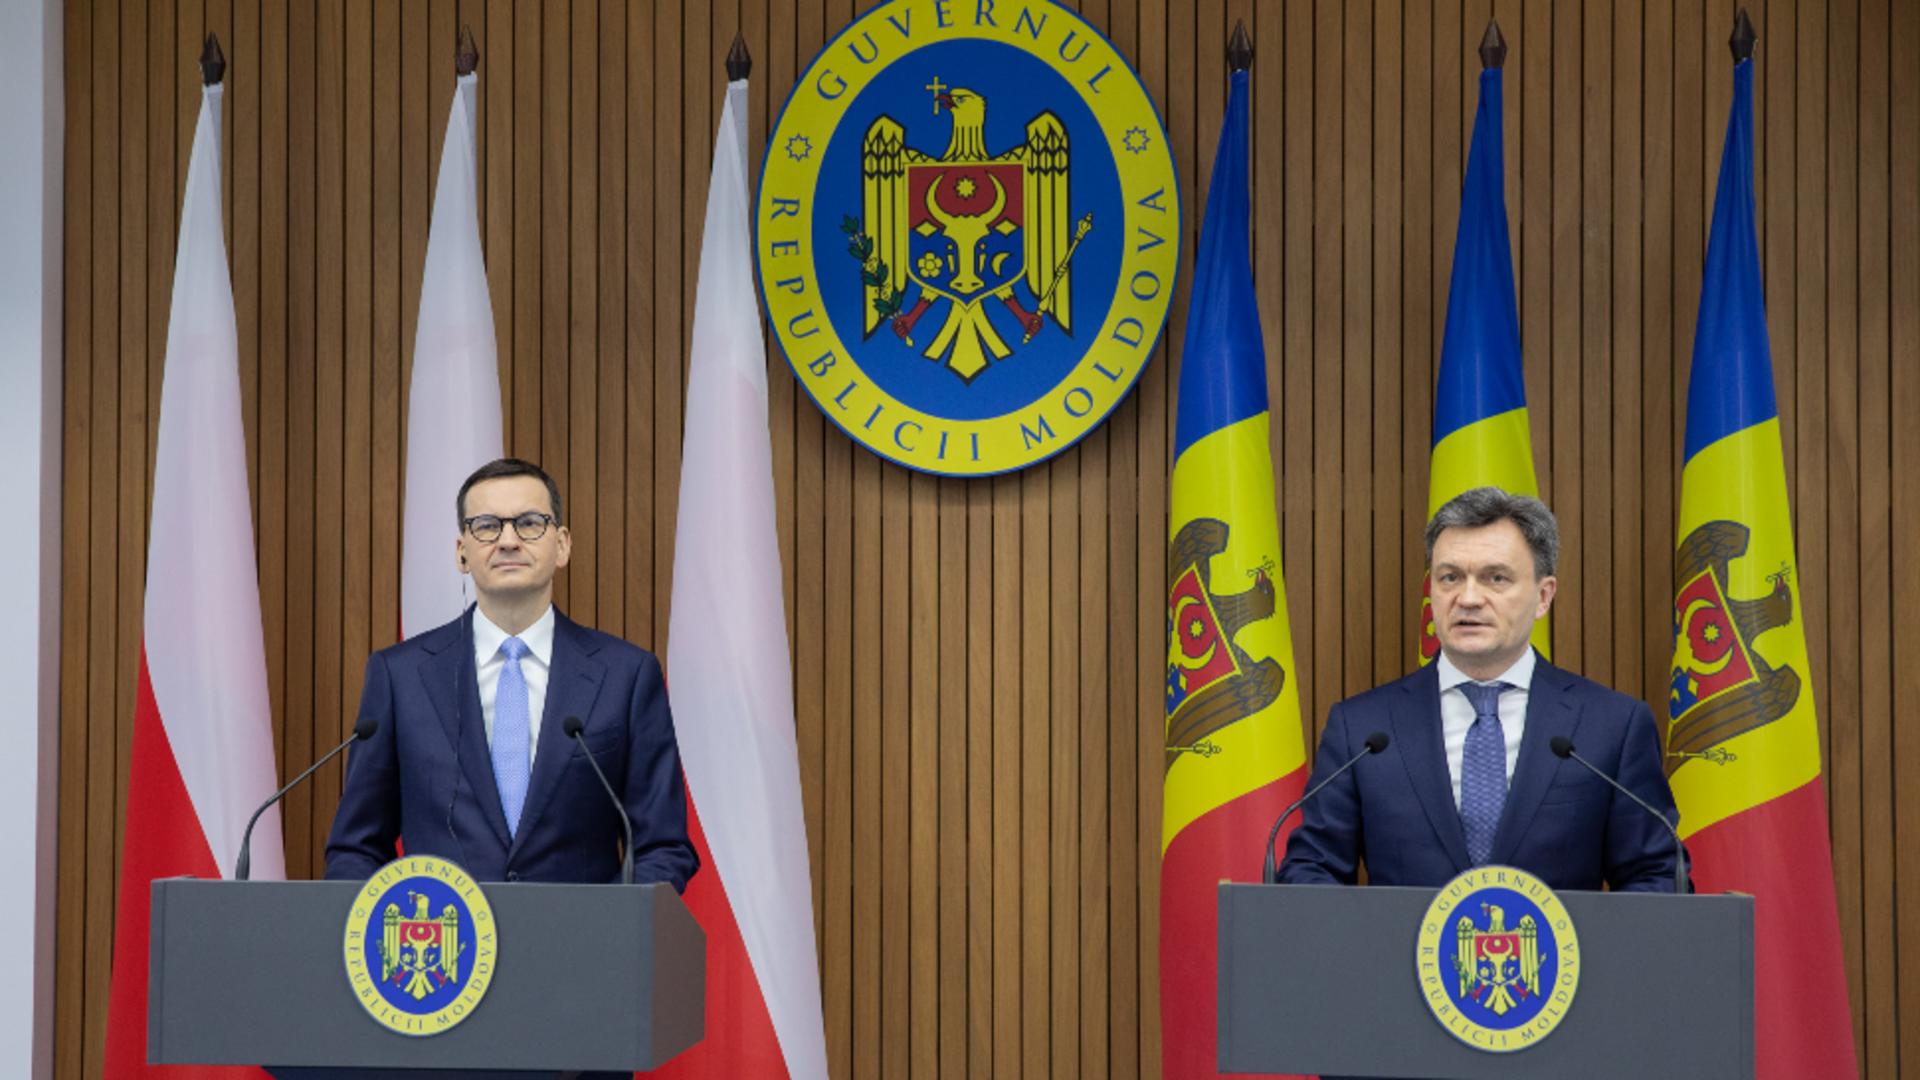 Vizită crucială în contextul amenințărilor Rusiei: Premierul polonez, prezent la Chișinău. Care a fost agenda discuțiilor